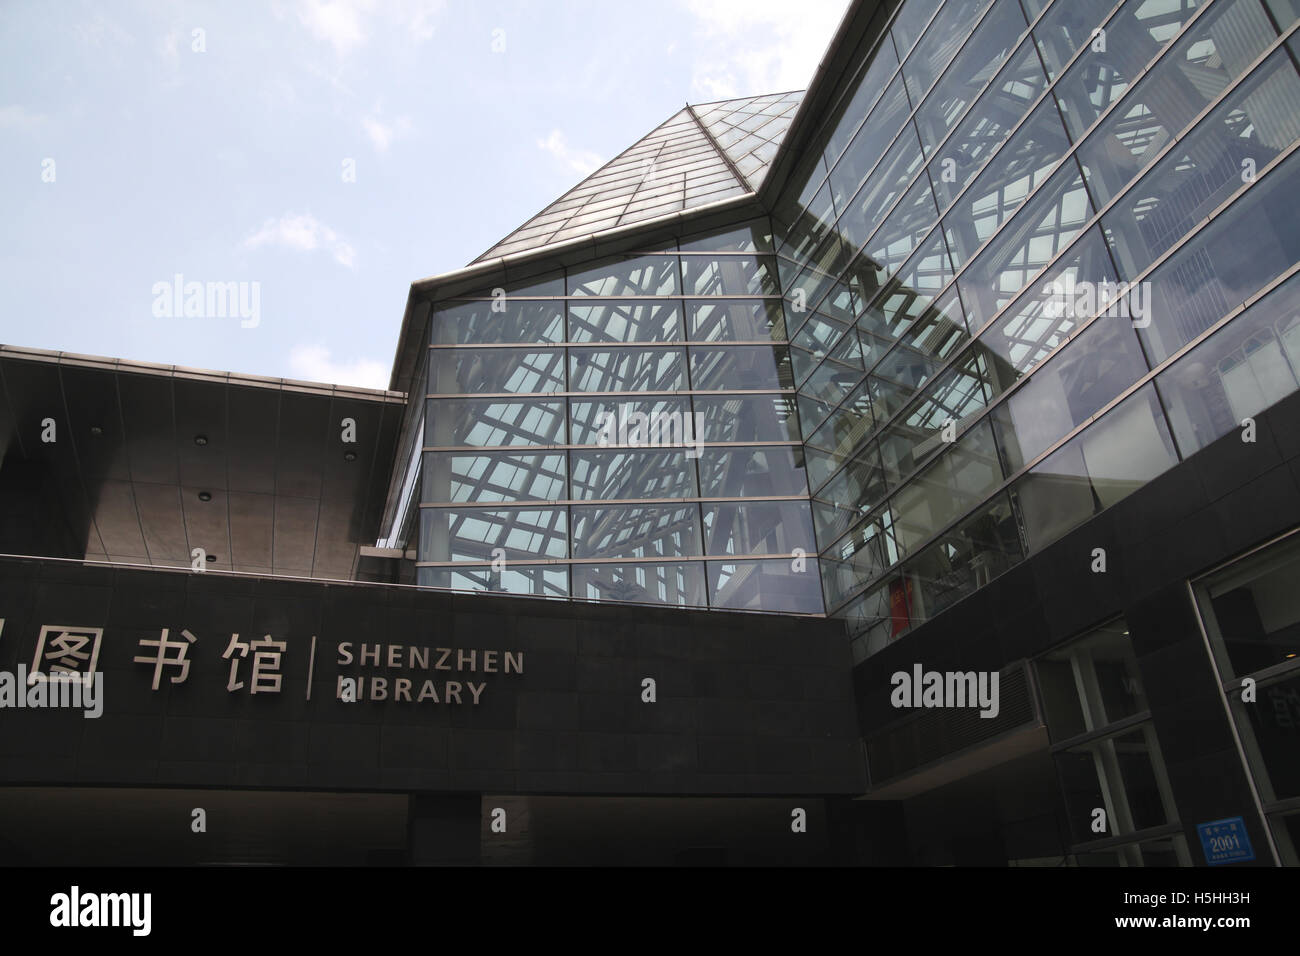 Der Eingang und Glas Wände der Shenzhen-Bibliothek von Arata Isozaki entworfen. Shenzhen, China. 05.05.2016. Stockfoto